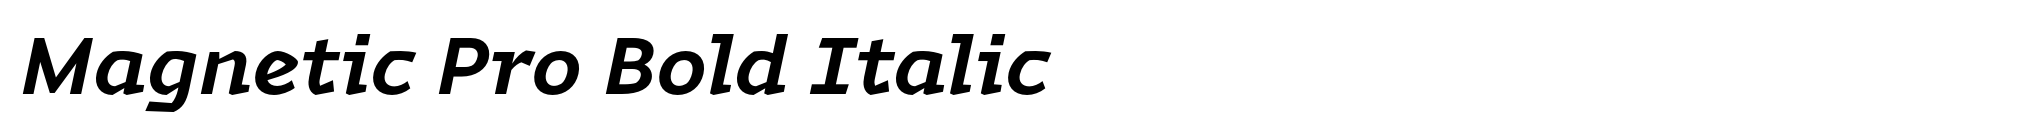 Magnetic Pro Bold Italic image